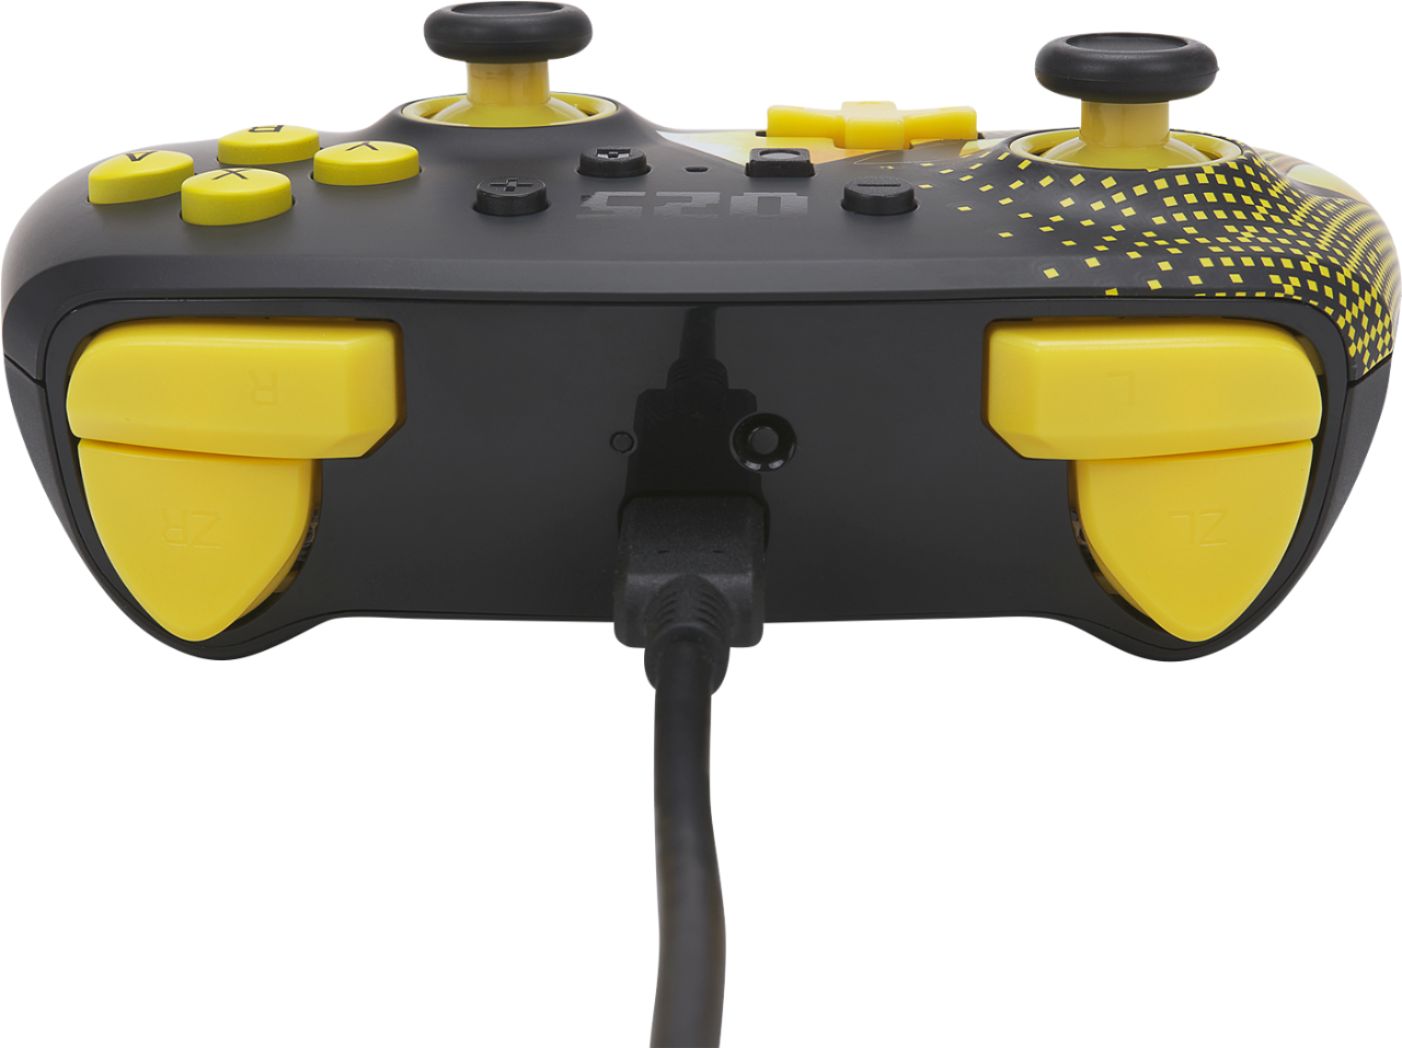 Best Buy: PowerA Enhanced Wired Controller for Nintendo Switch Pokémon:  Pikachu Grey 1517916-01